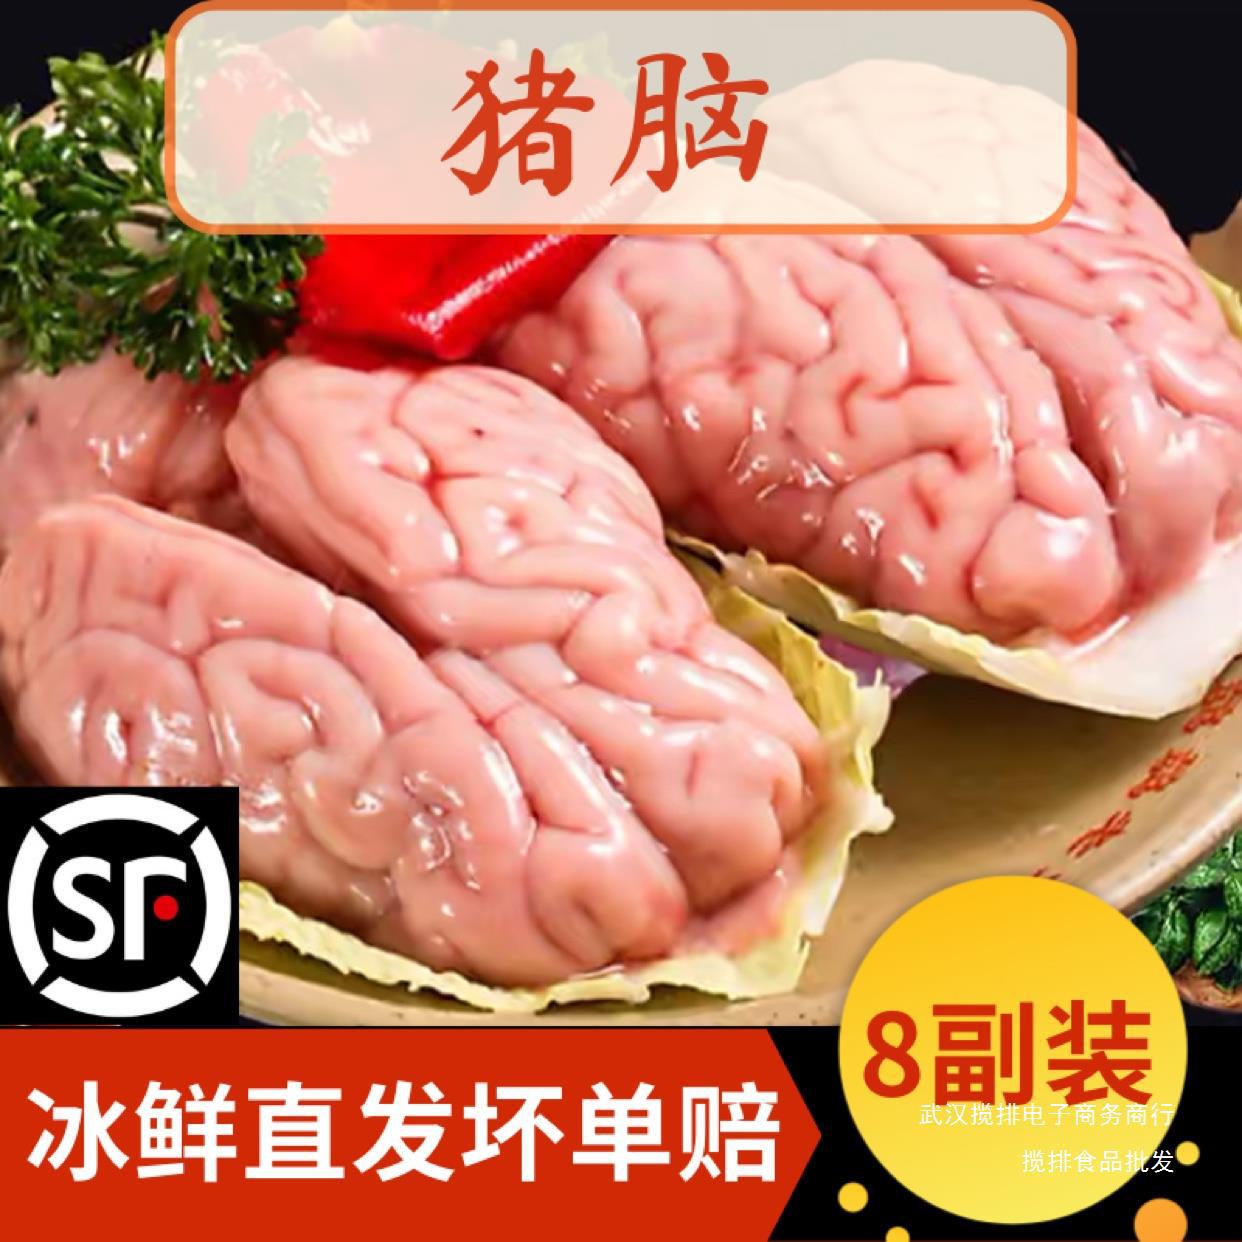 猪脑花新鲜冷冻猪小脑16副生鲜大猪脑袋商用烧烤火锅炖汤食材包邮